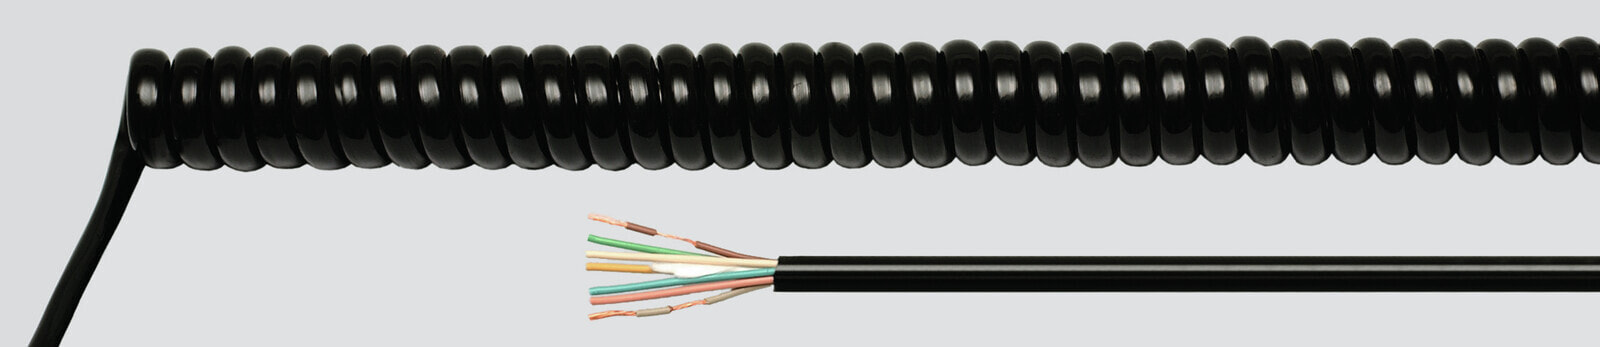 Helukabel 86386 - Low voltage cable - Black - Cooper - 1 mm² - 399.4 kg/km - -25 - 70 °C